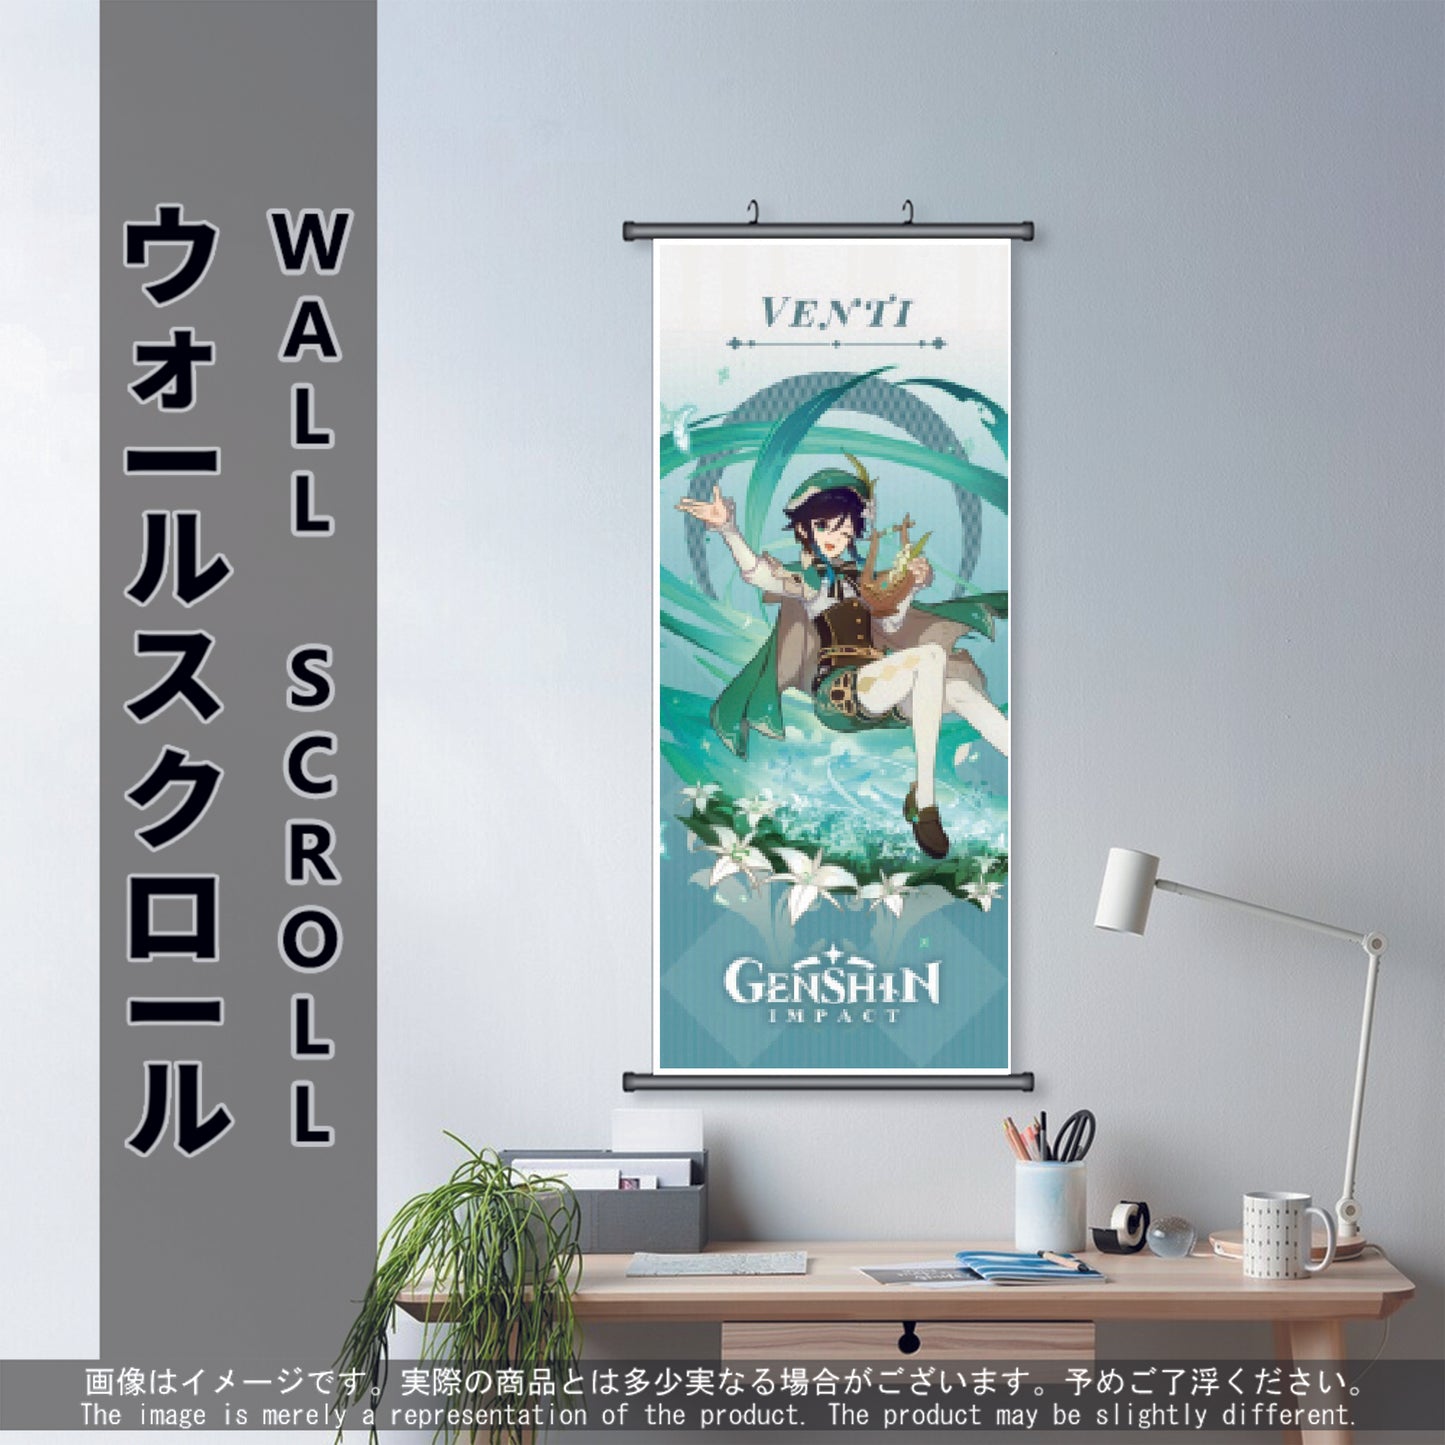 (GSN-ANEMO-03) VENTI Genshin Impact Anime Wall Scroll